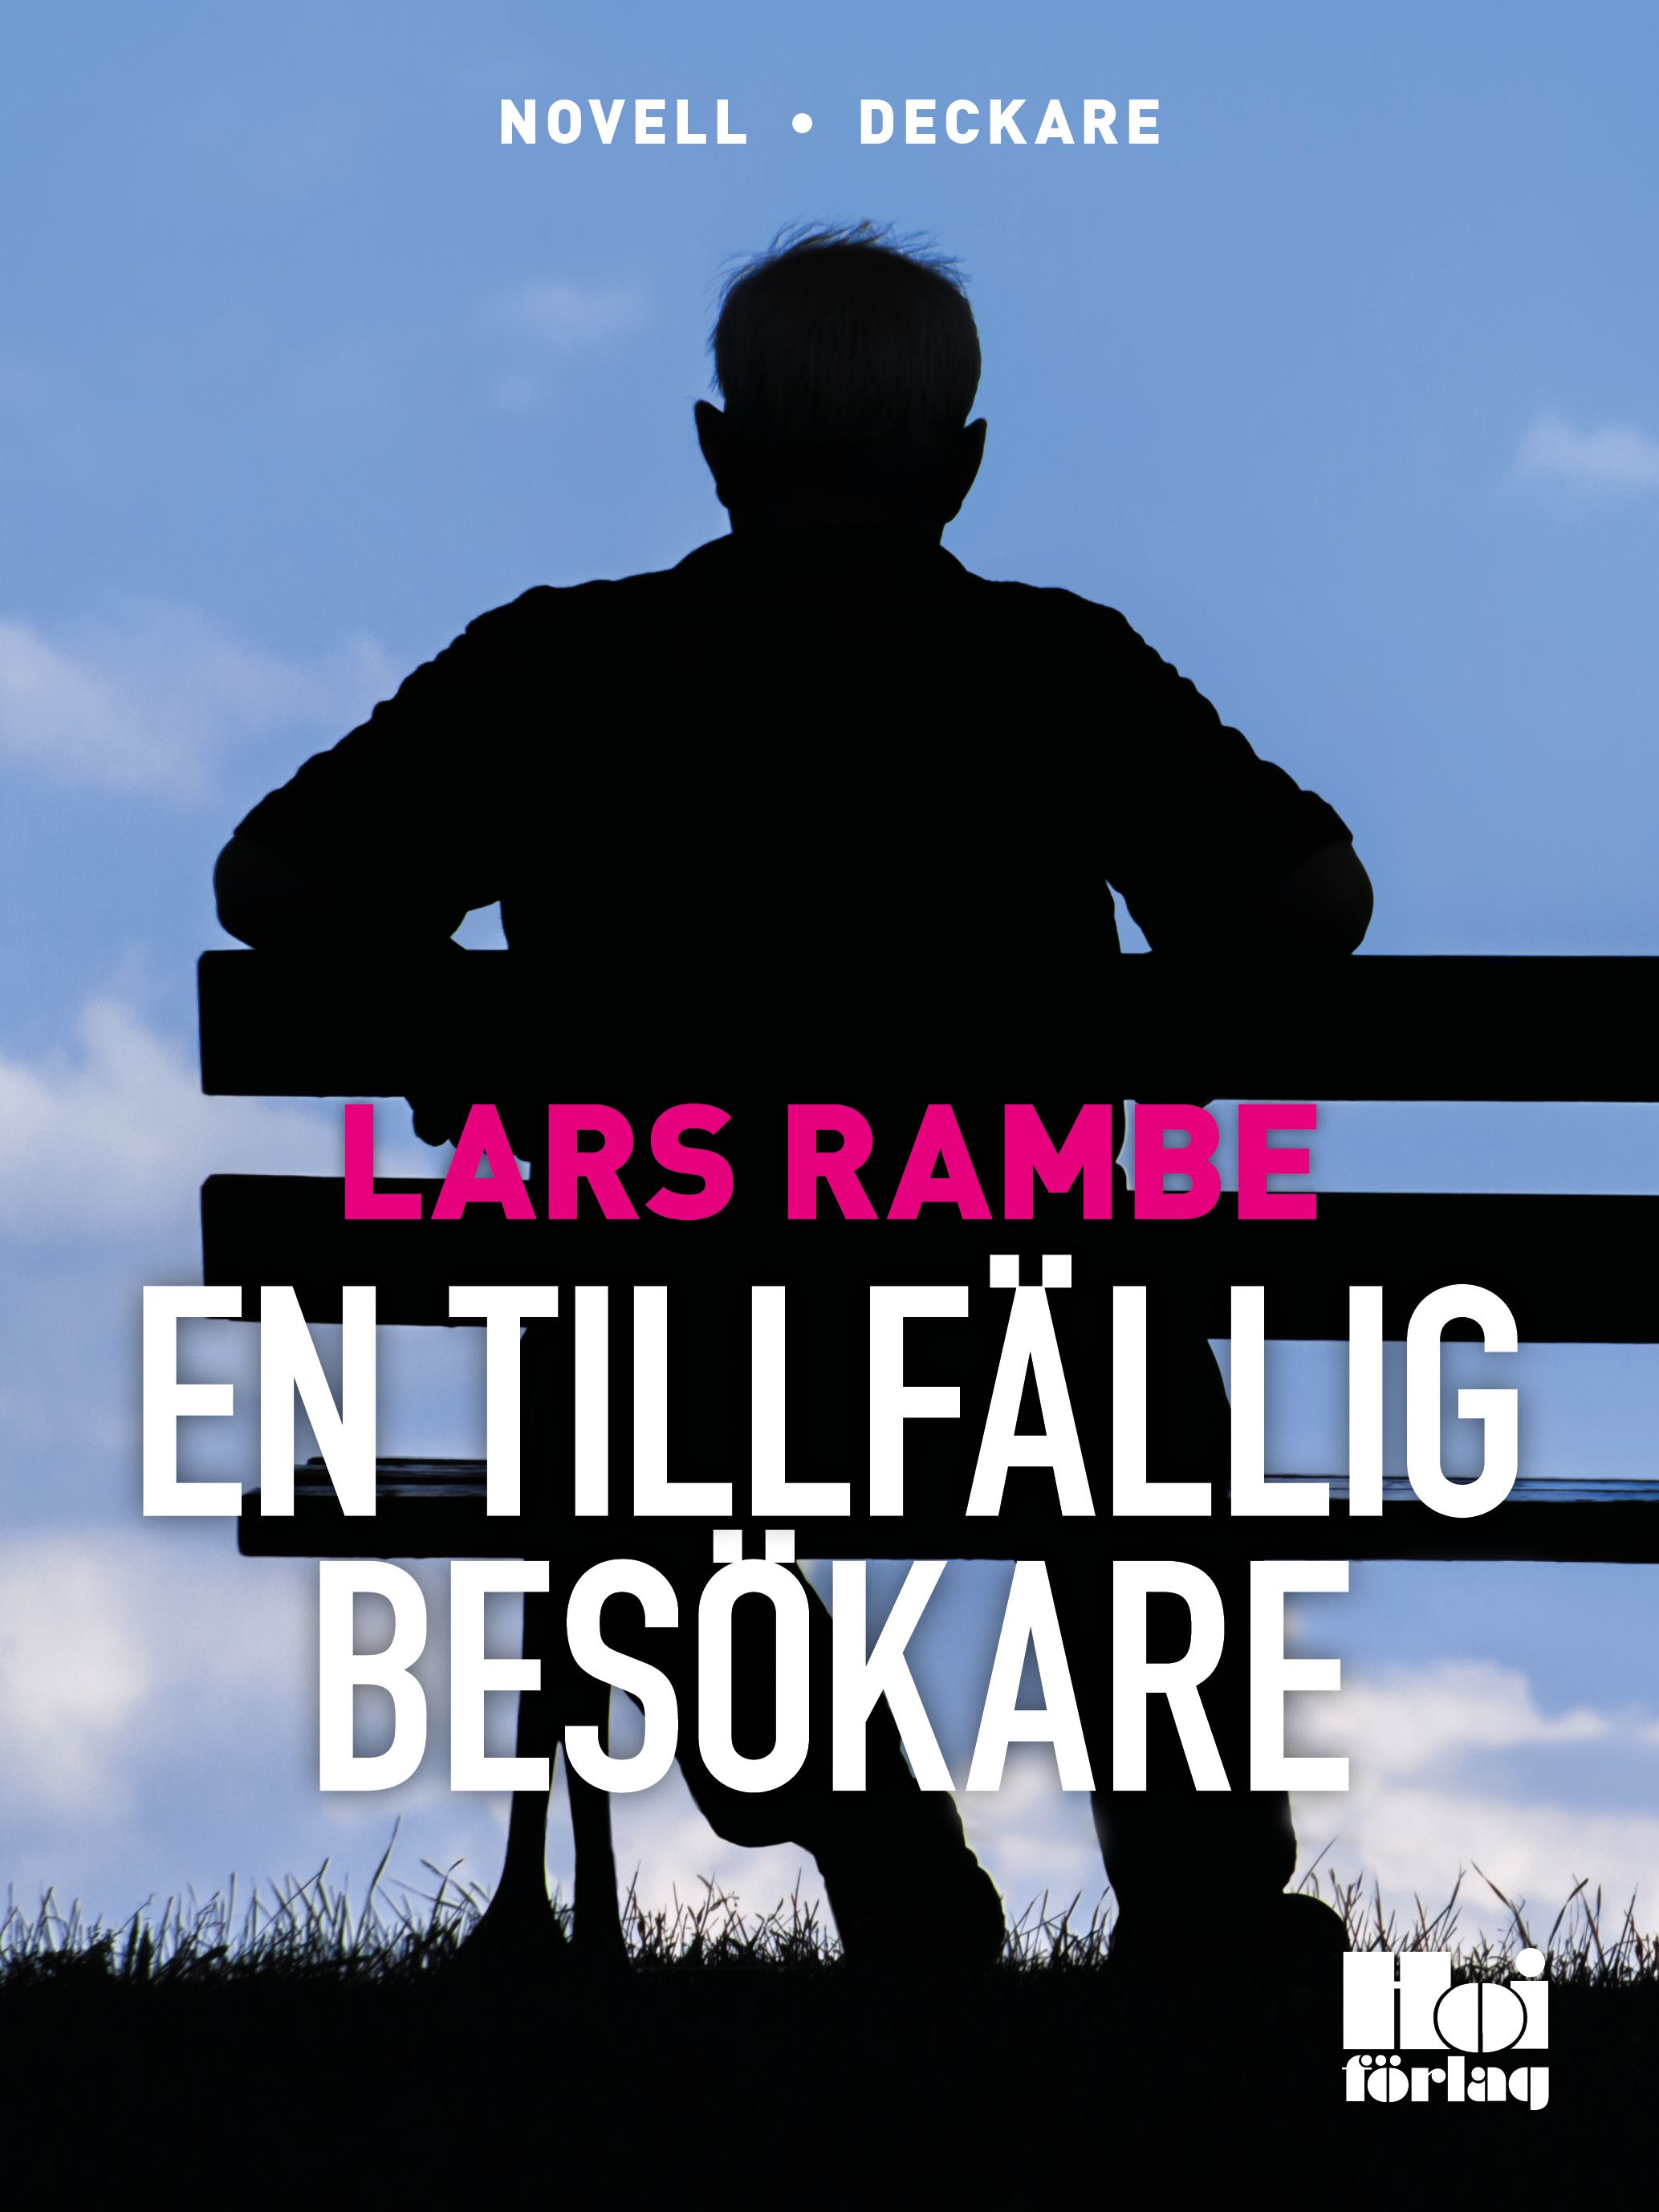 En tillfällig besökare, e-bok av Lars Rambe